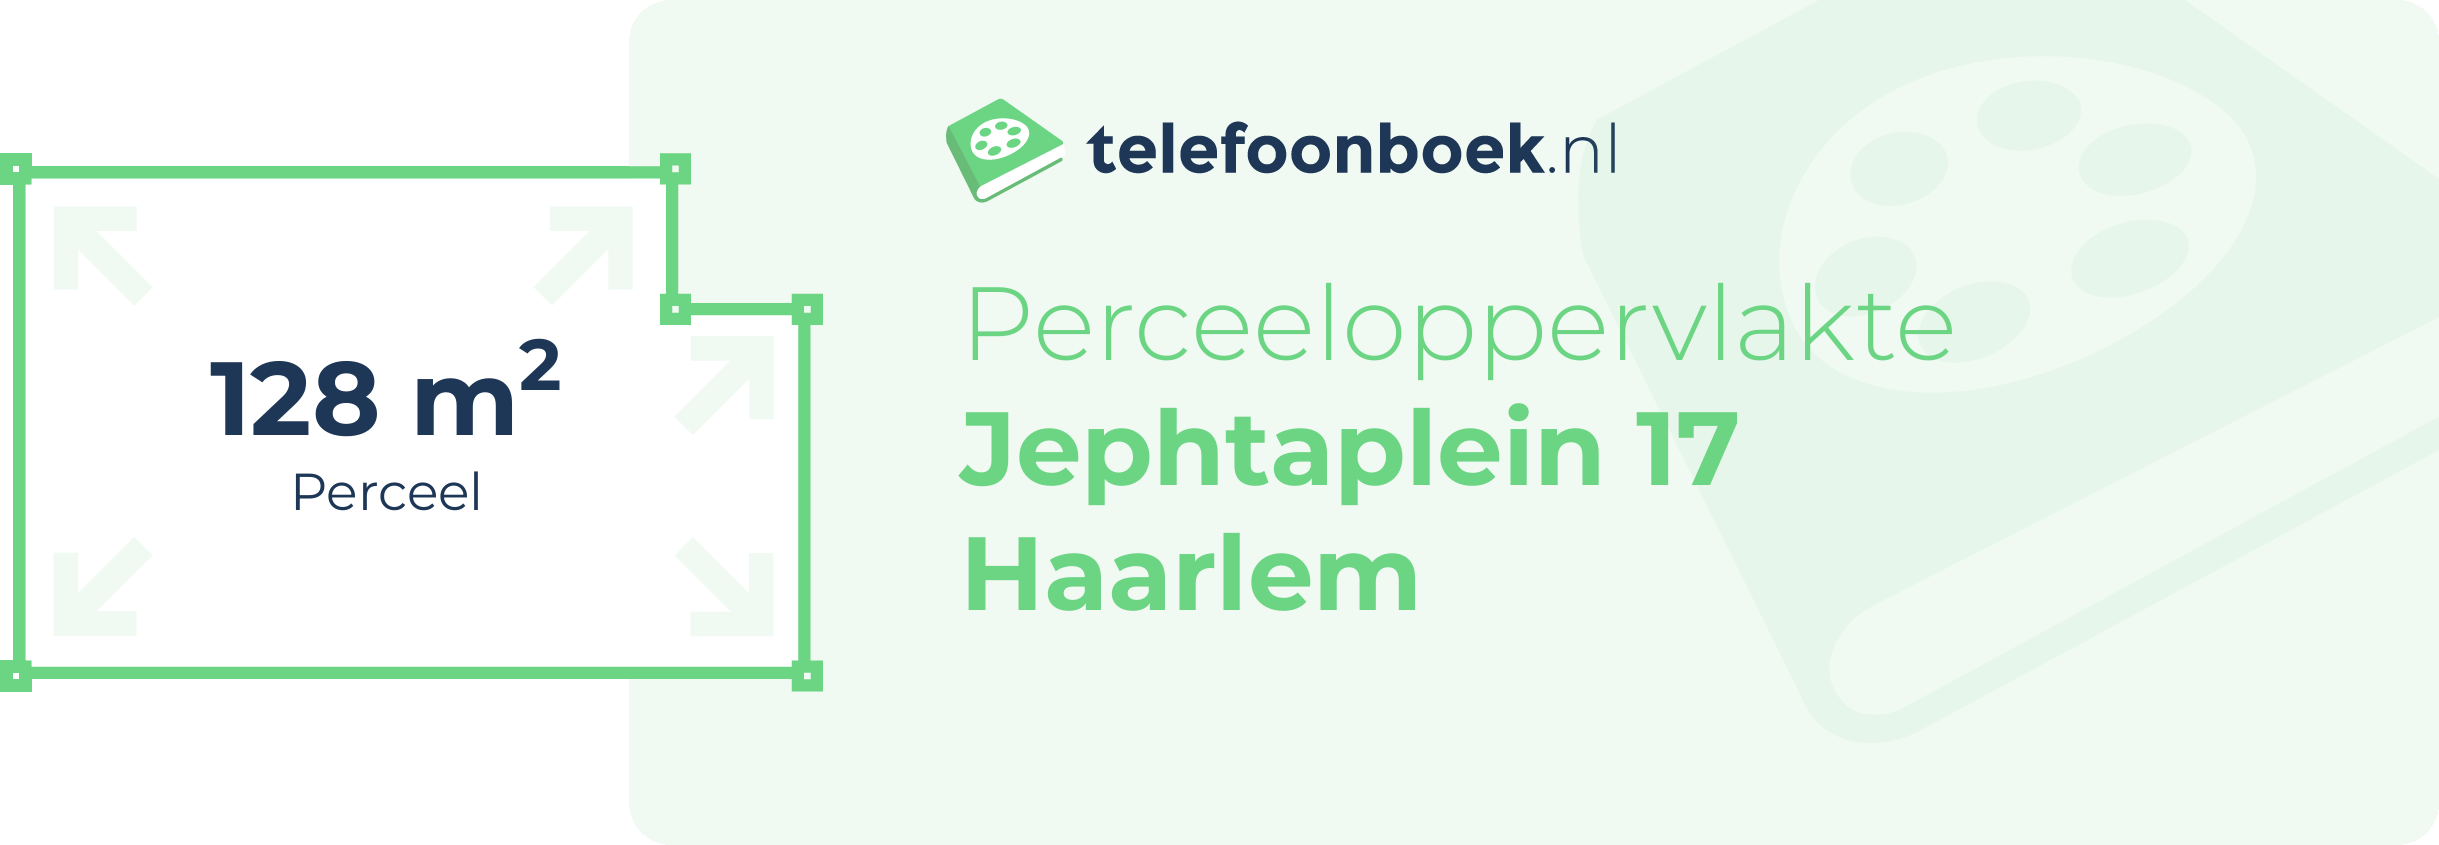 Perceeloppervlakte Jephtaplein 17 Haarlem